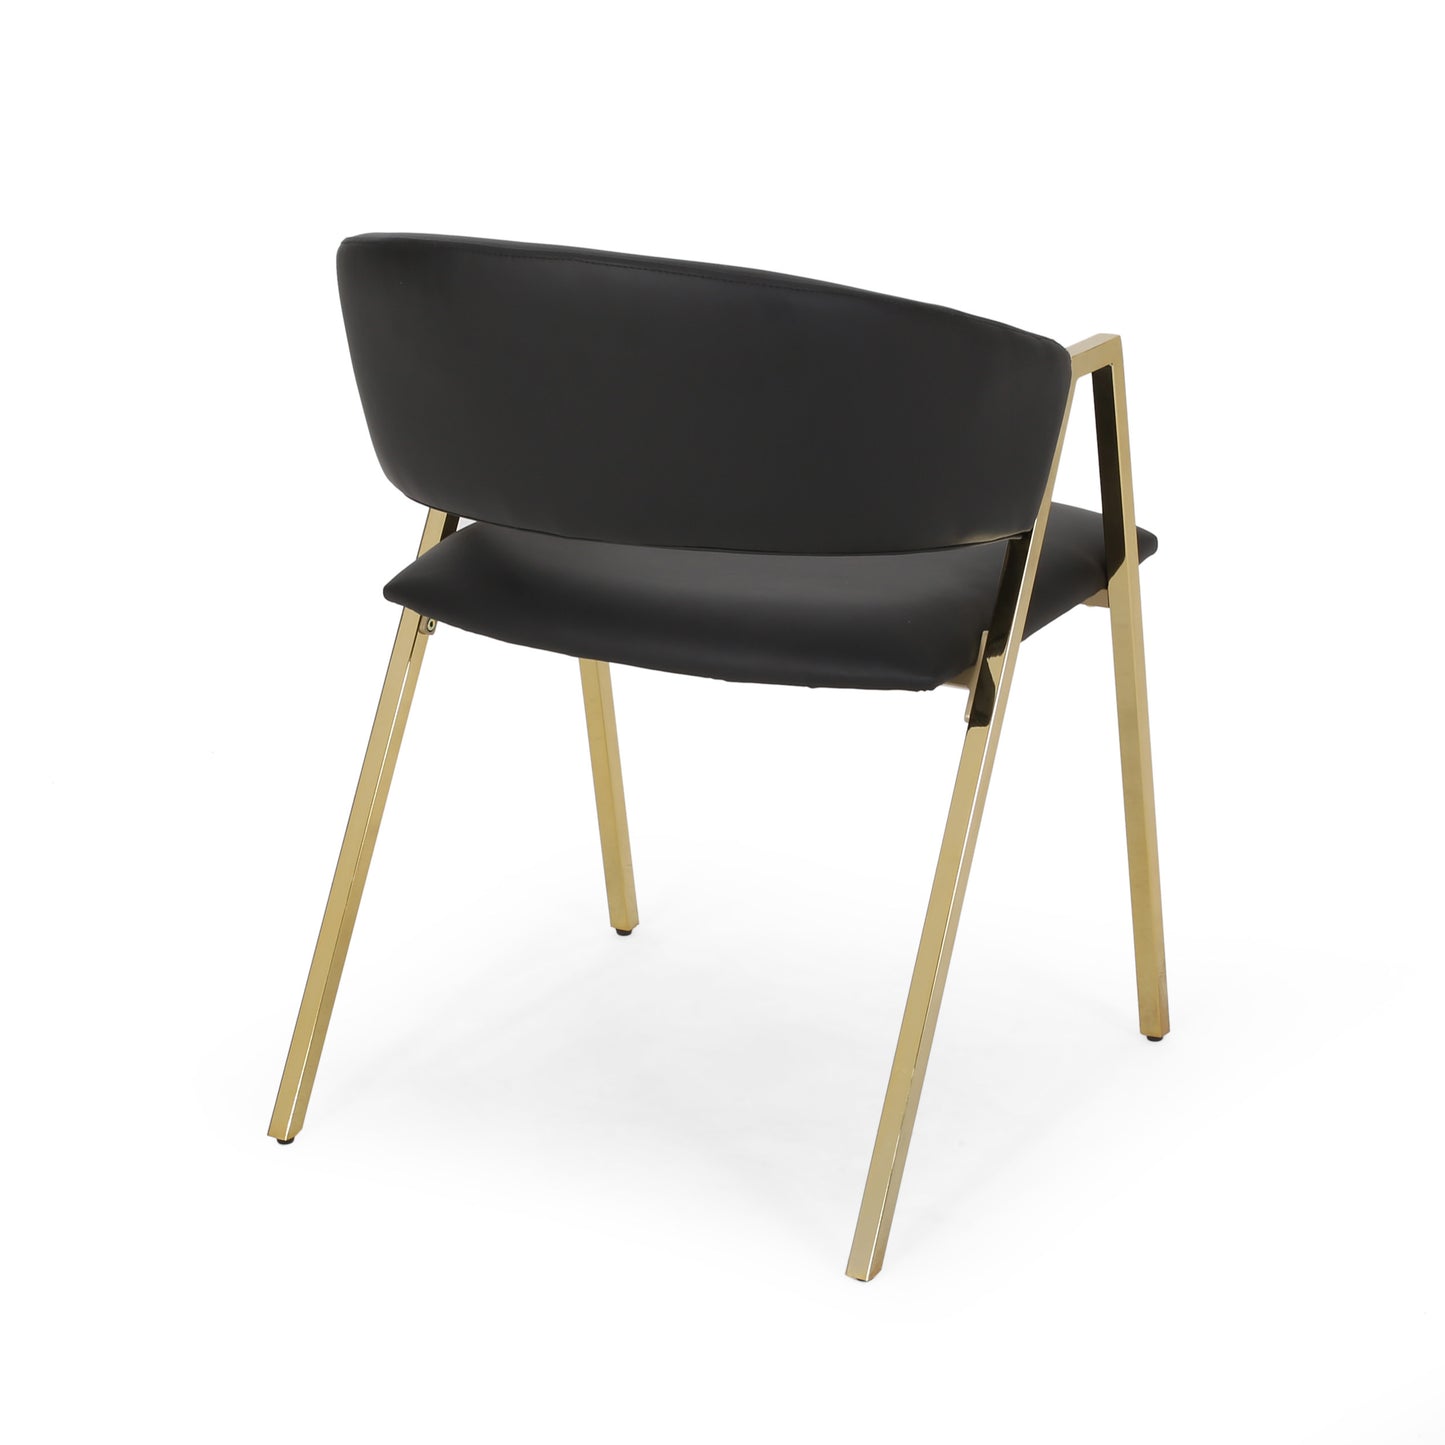 Jalexa Modern Upholstered Dining Chair (Set of 2)